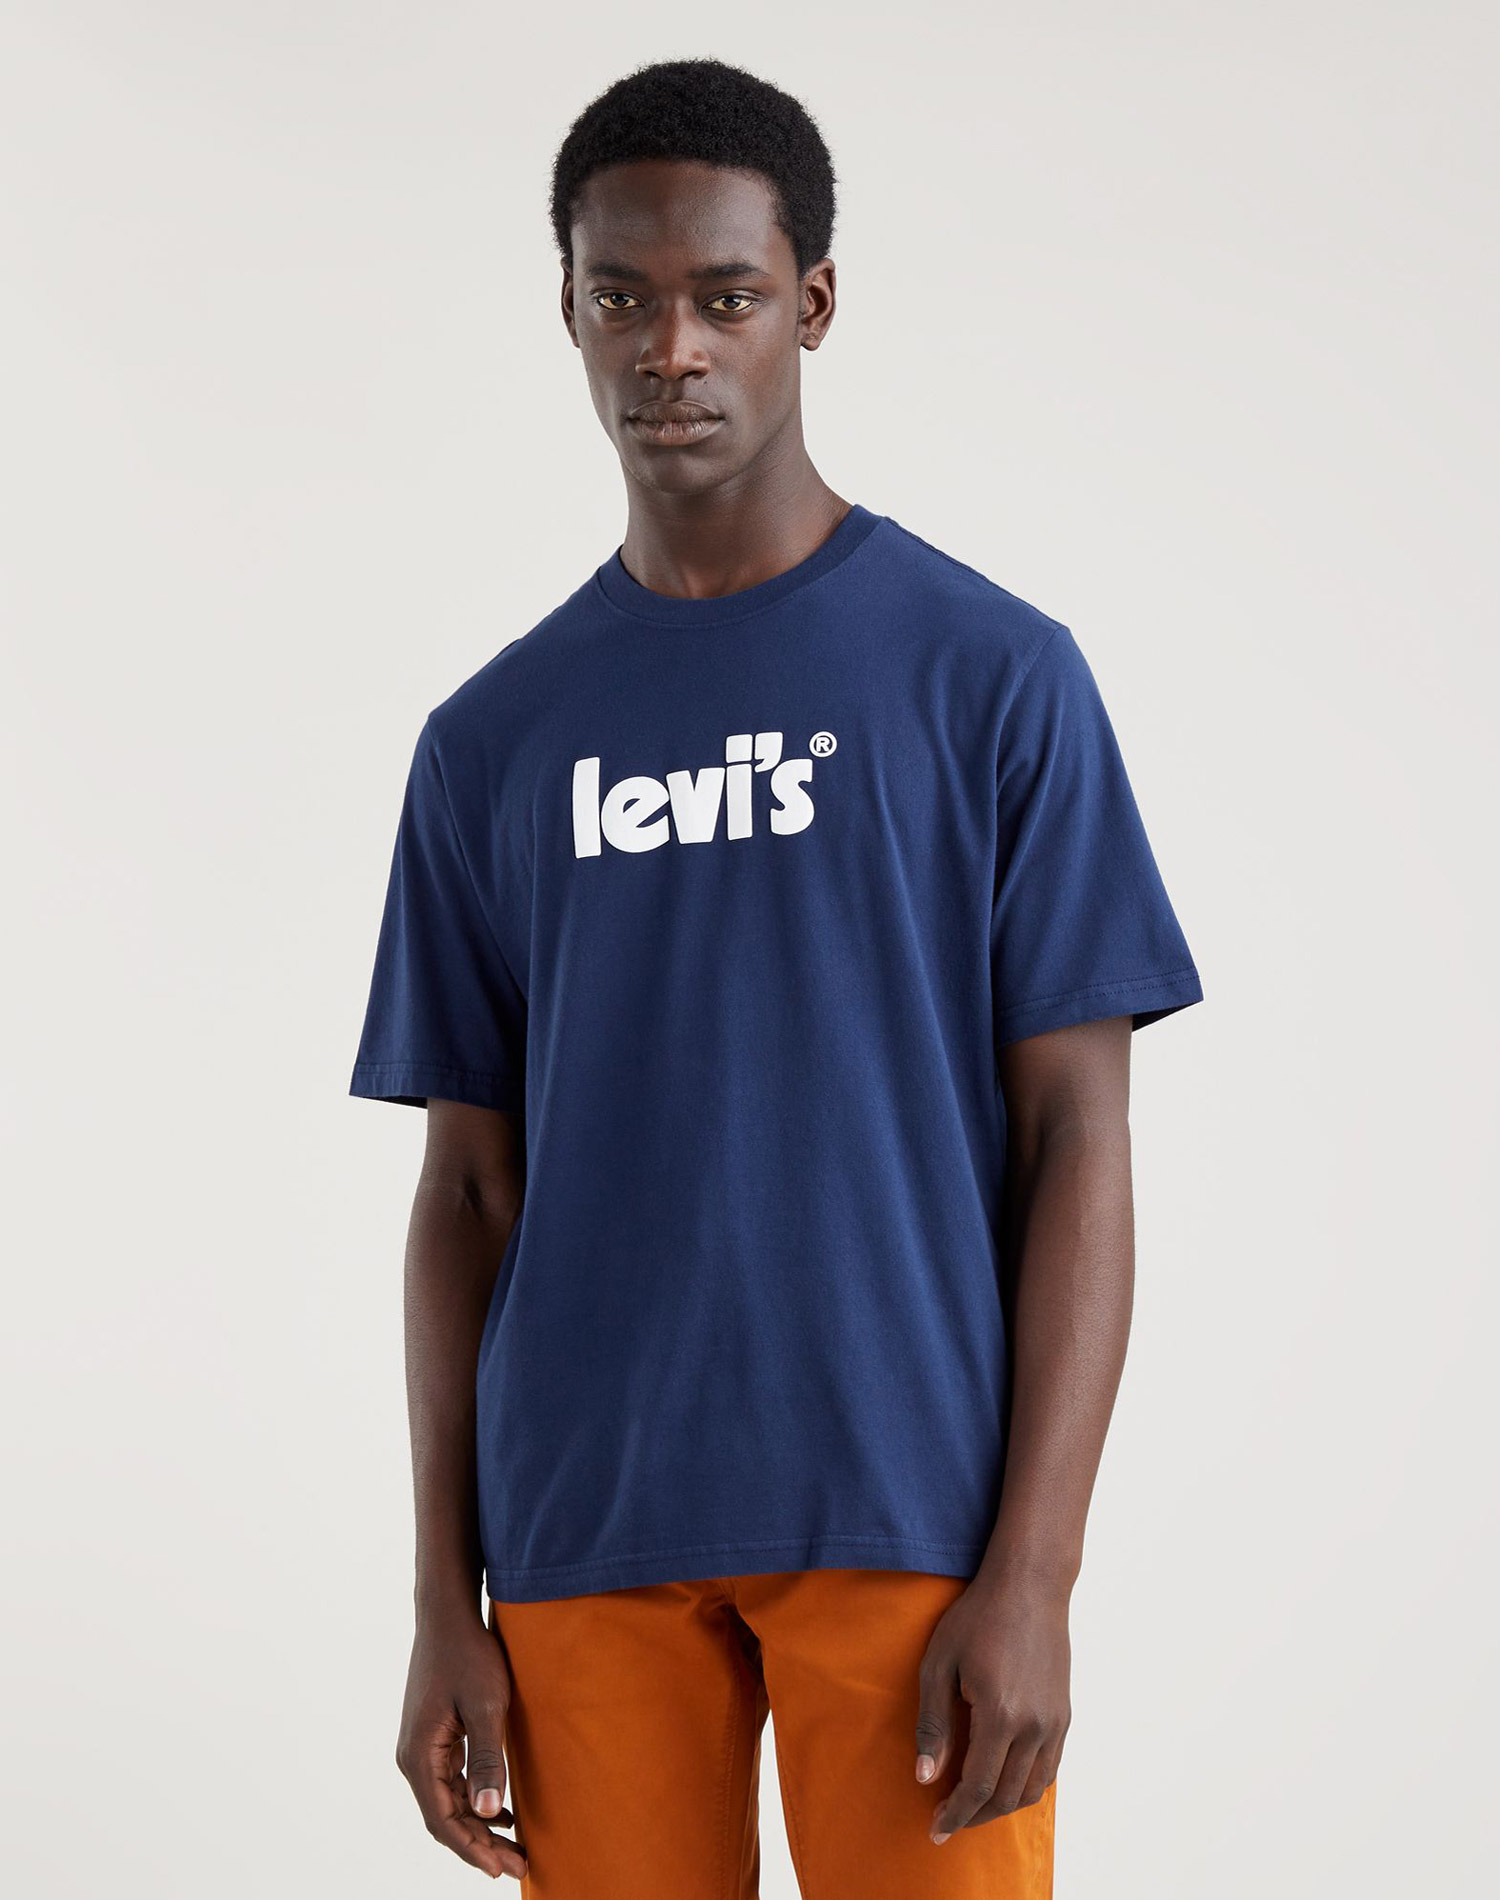 Levi's samarreta d'home de m/c 16143-0393 blava